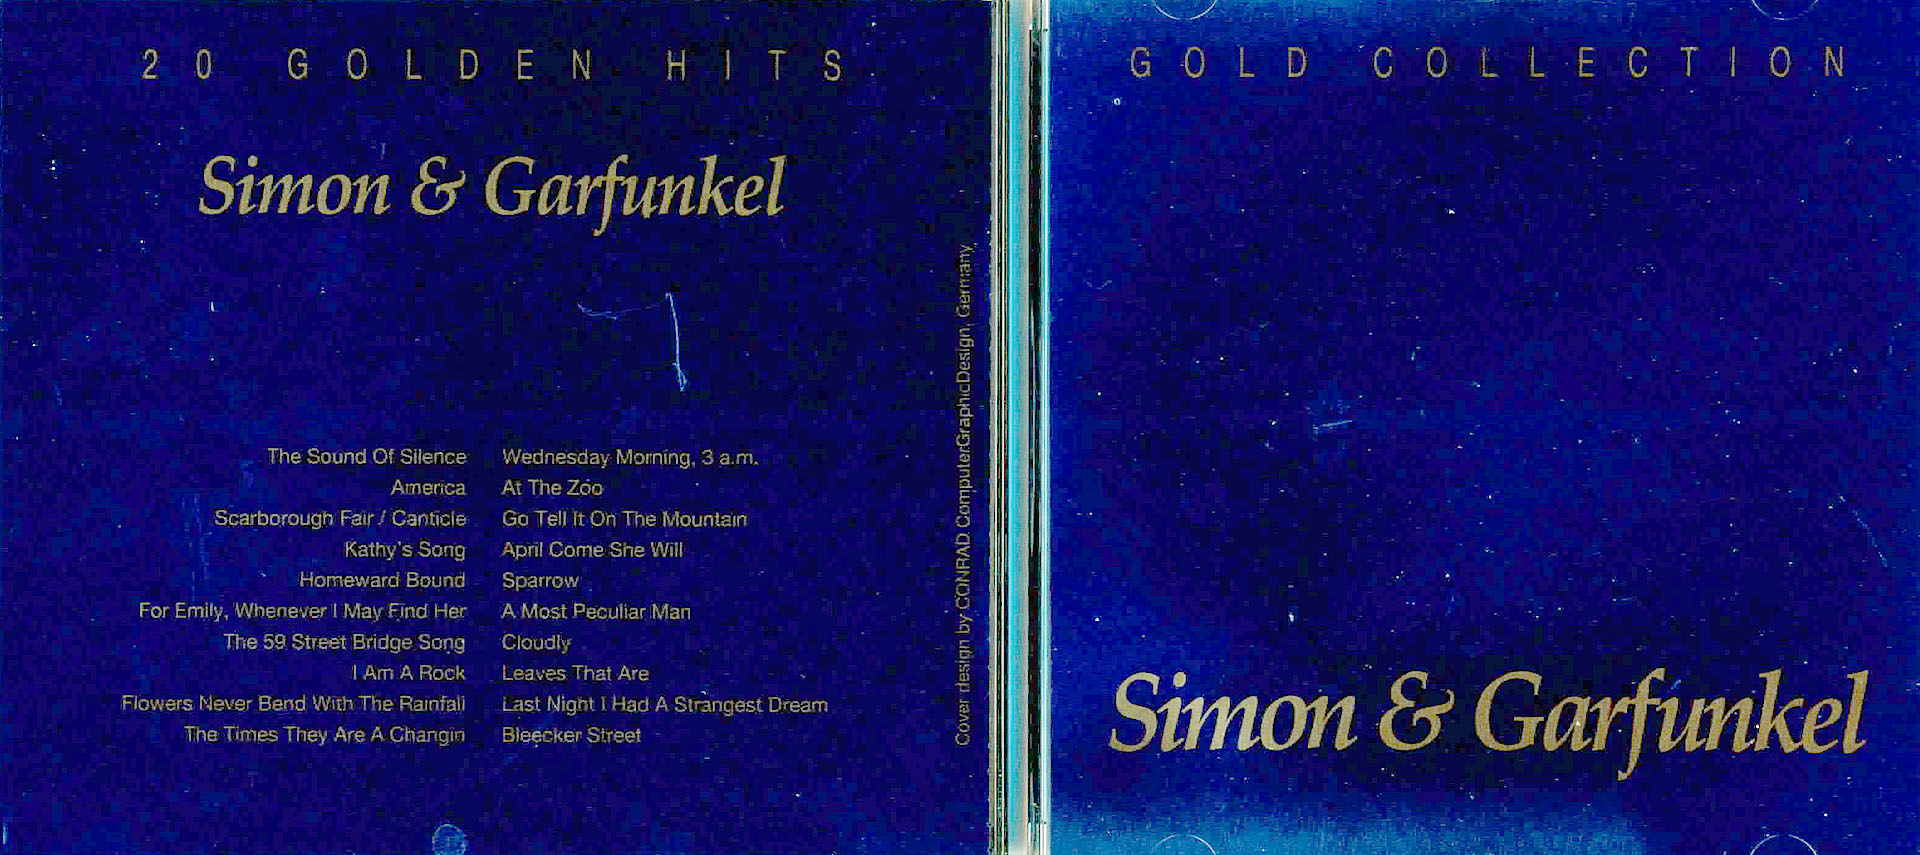 Gold Collection Simon & Garfunkel - Simon & Garfunkel